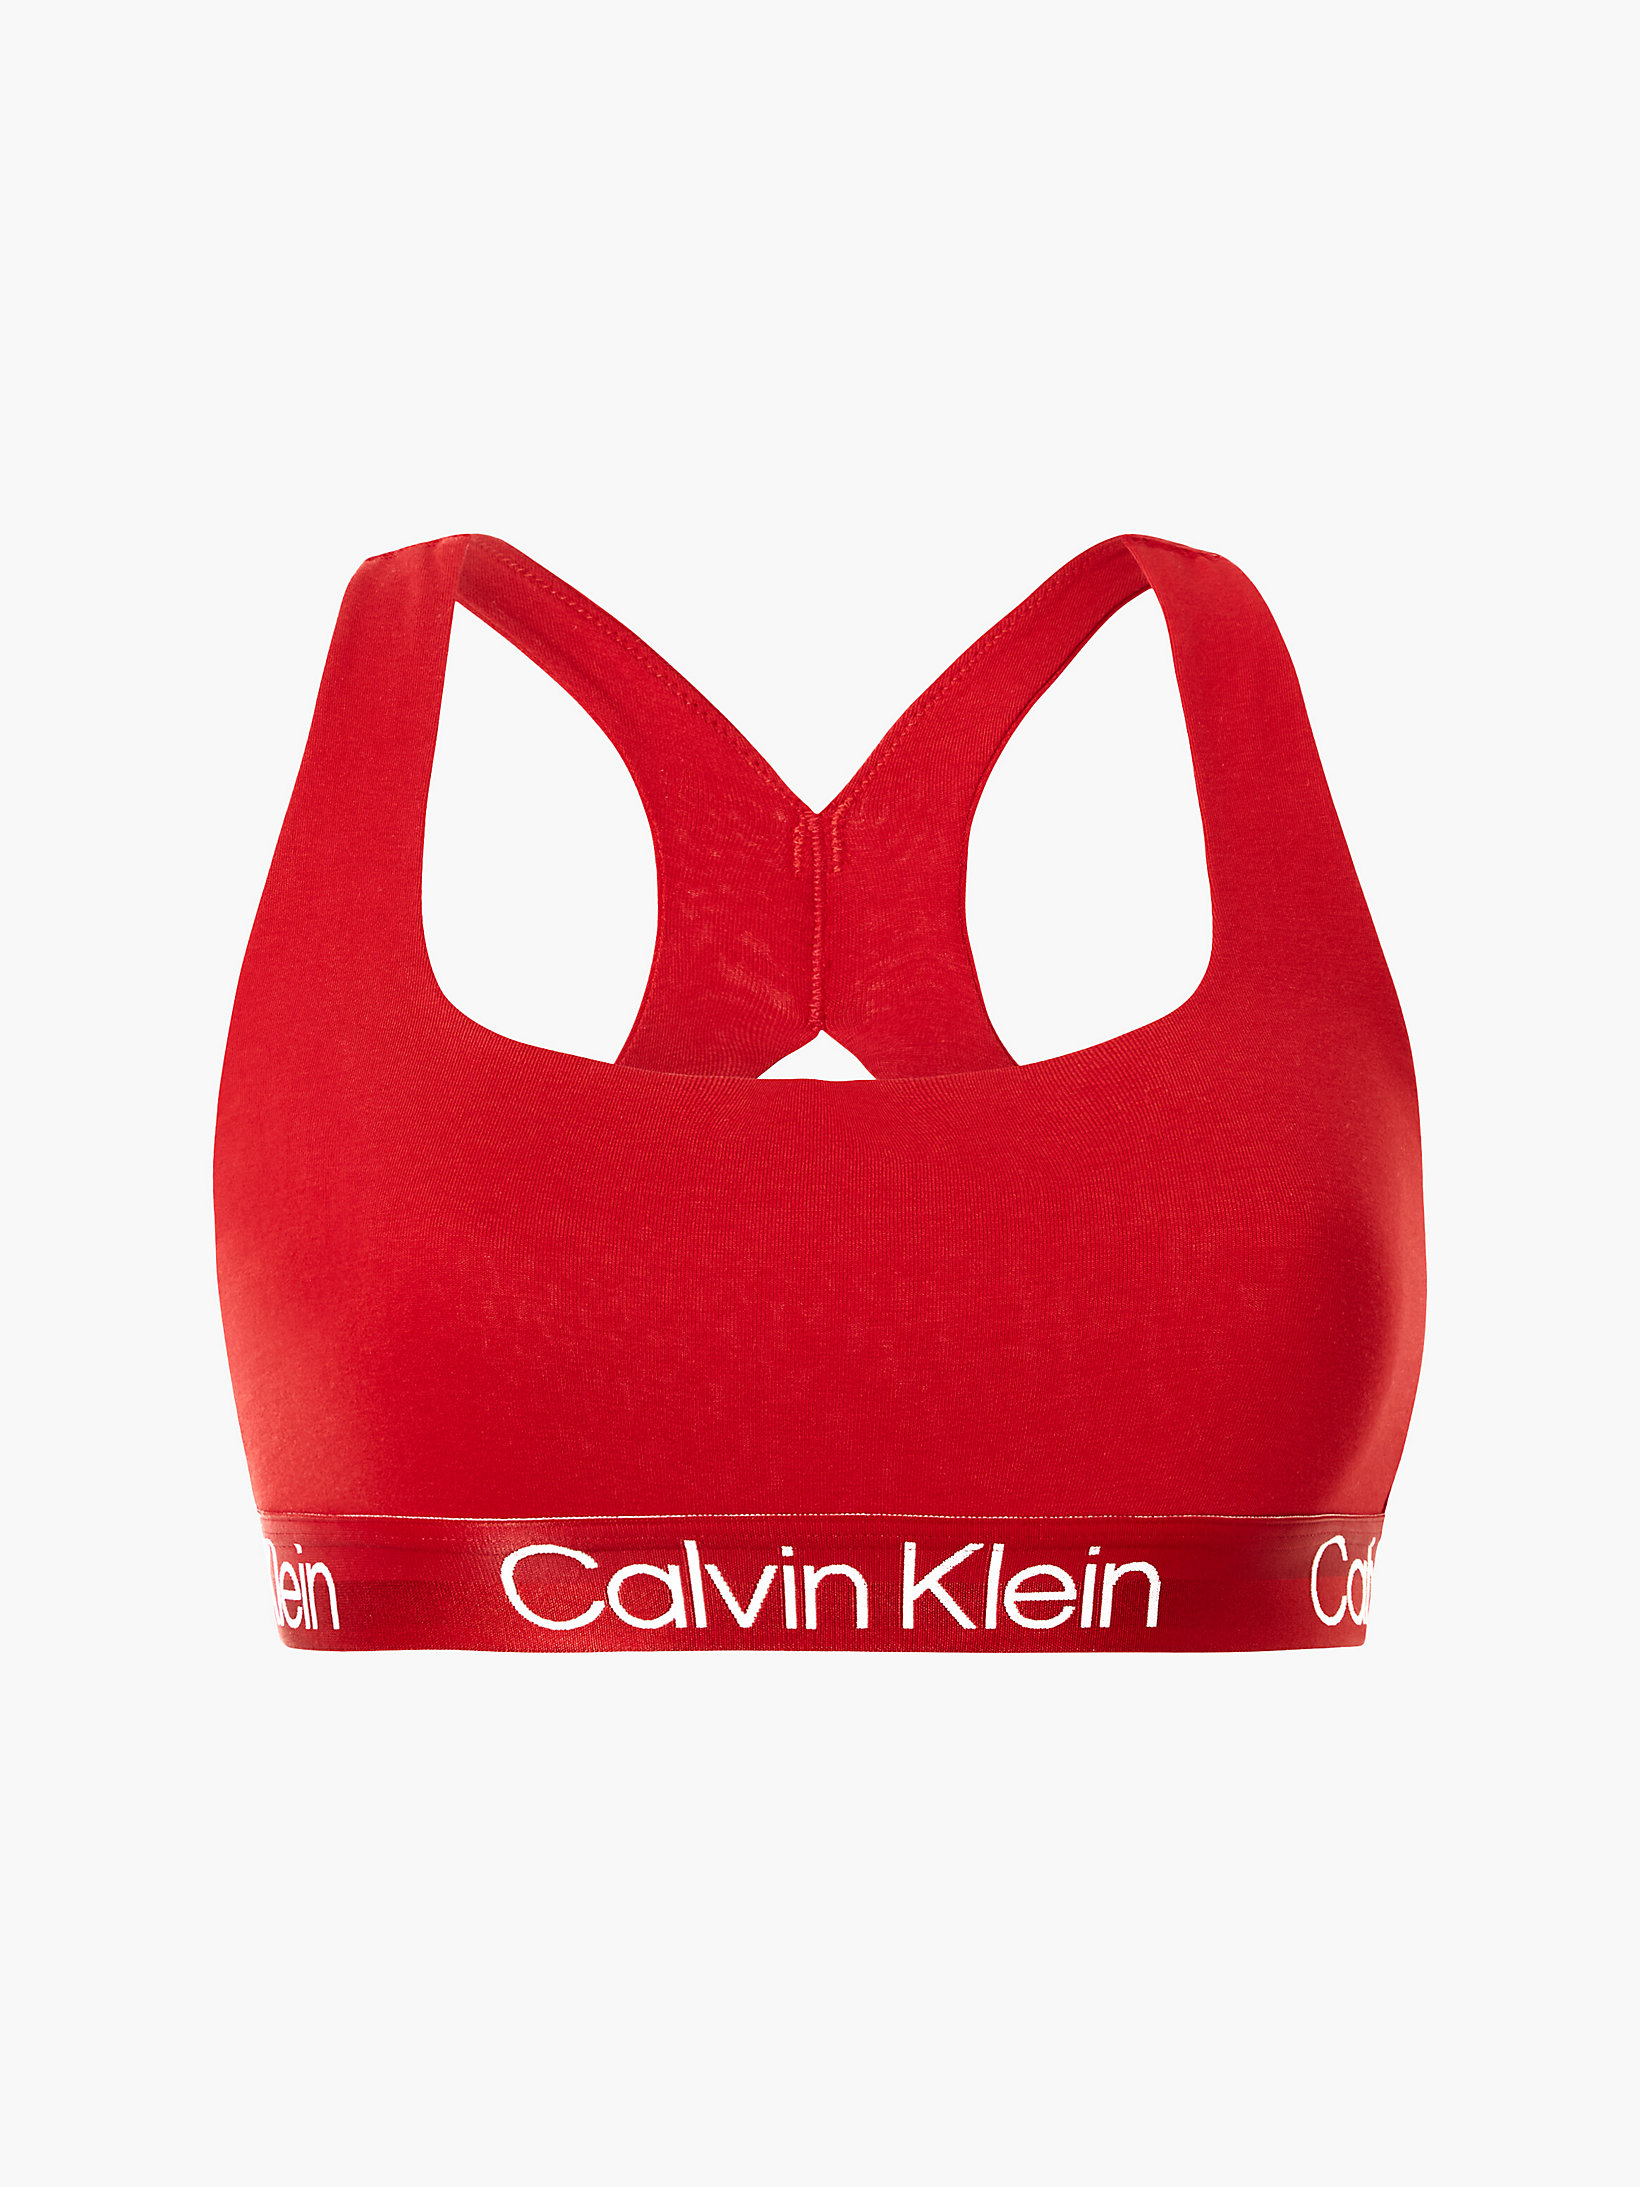 Rustic Red Bralette - Modern Structure undefined women Calvin Klein